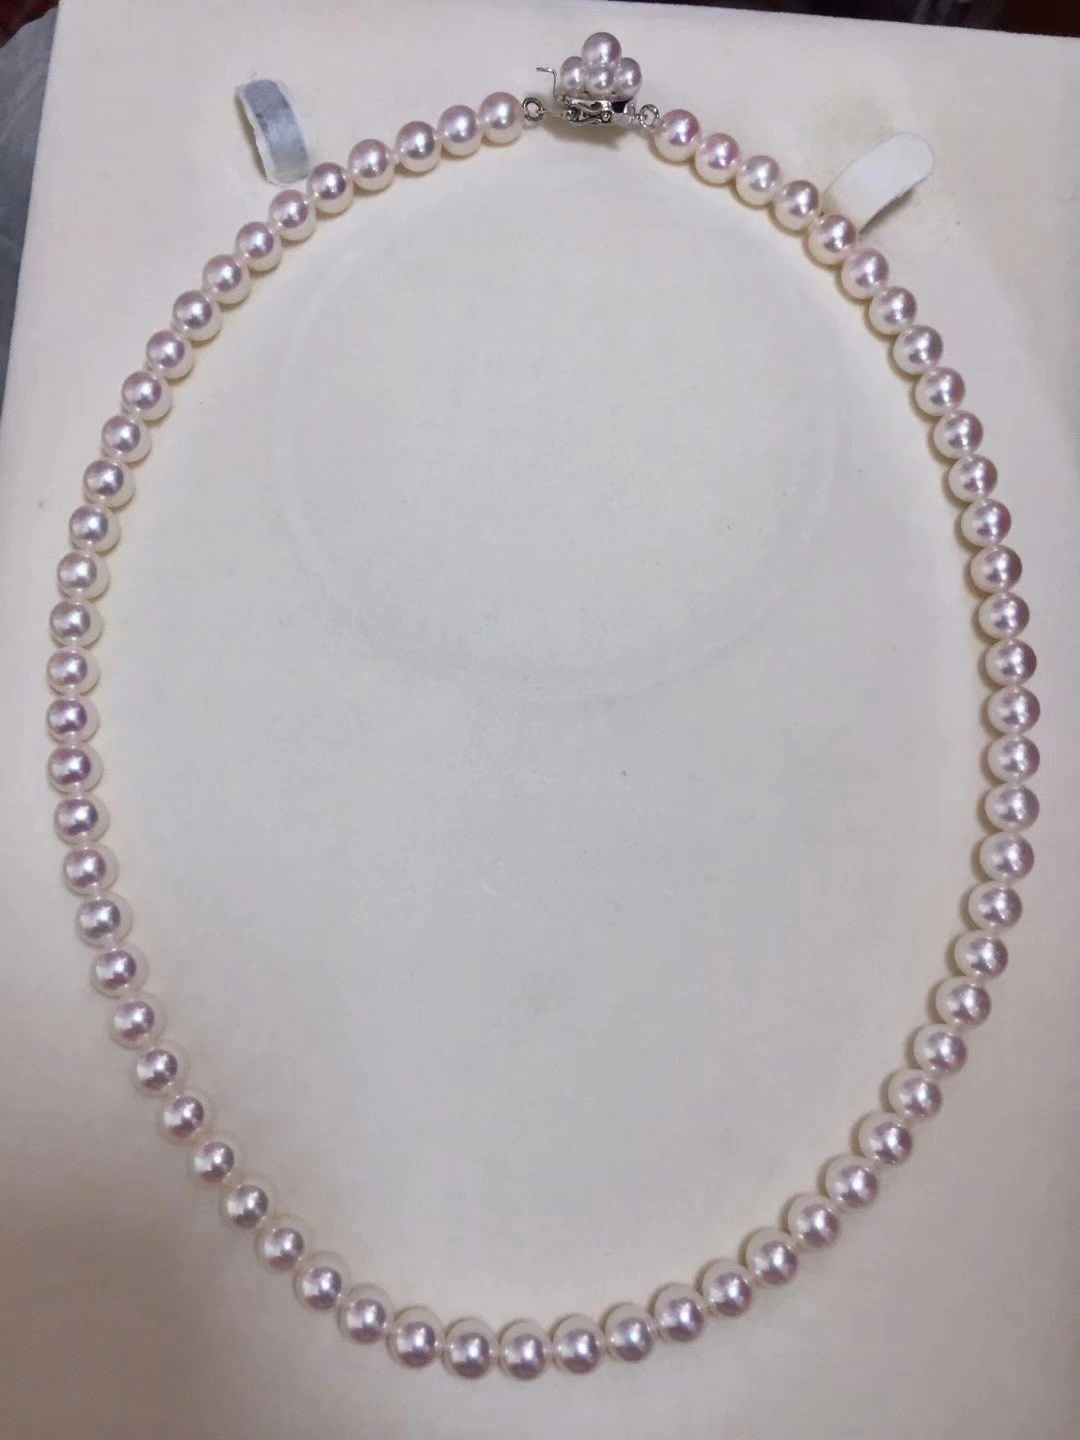 日本palo品牌货akoya海水珍珠项链,专柜二十万的,自己可以了解一下!